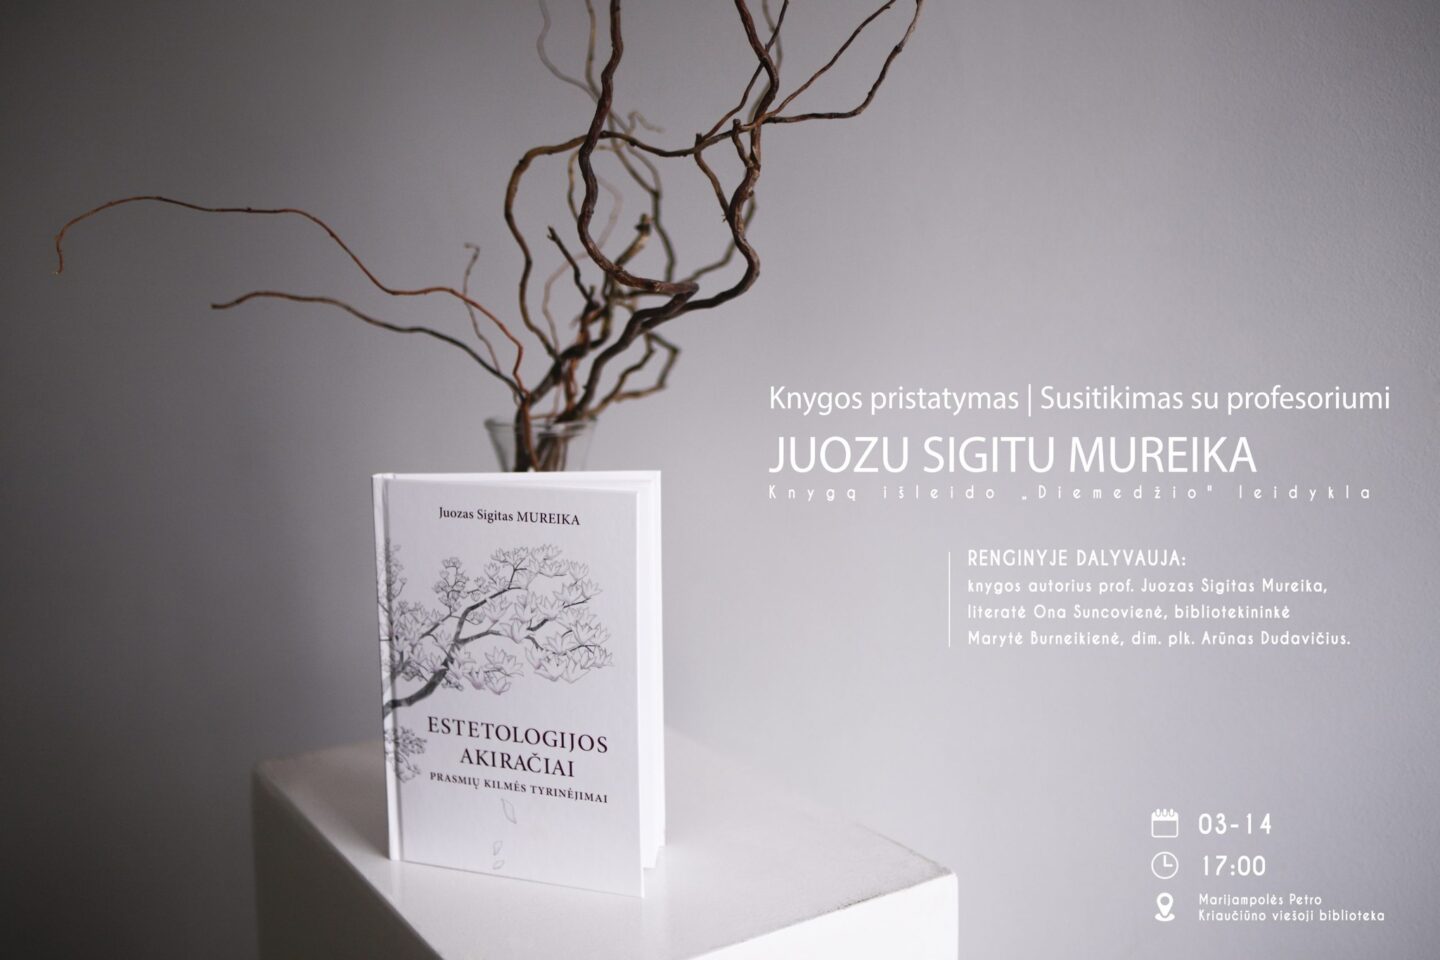 Susitikimas su profesoriumi Juozu Sigitu Mureika ir monografijos „Estetologijos akiračiai. Prasmių kilmės tyrinėjimai“ pristatymas